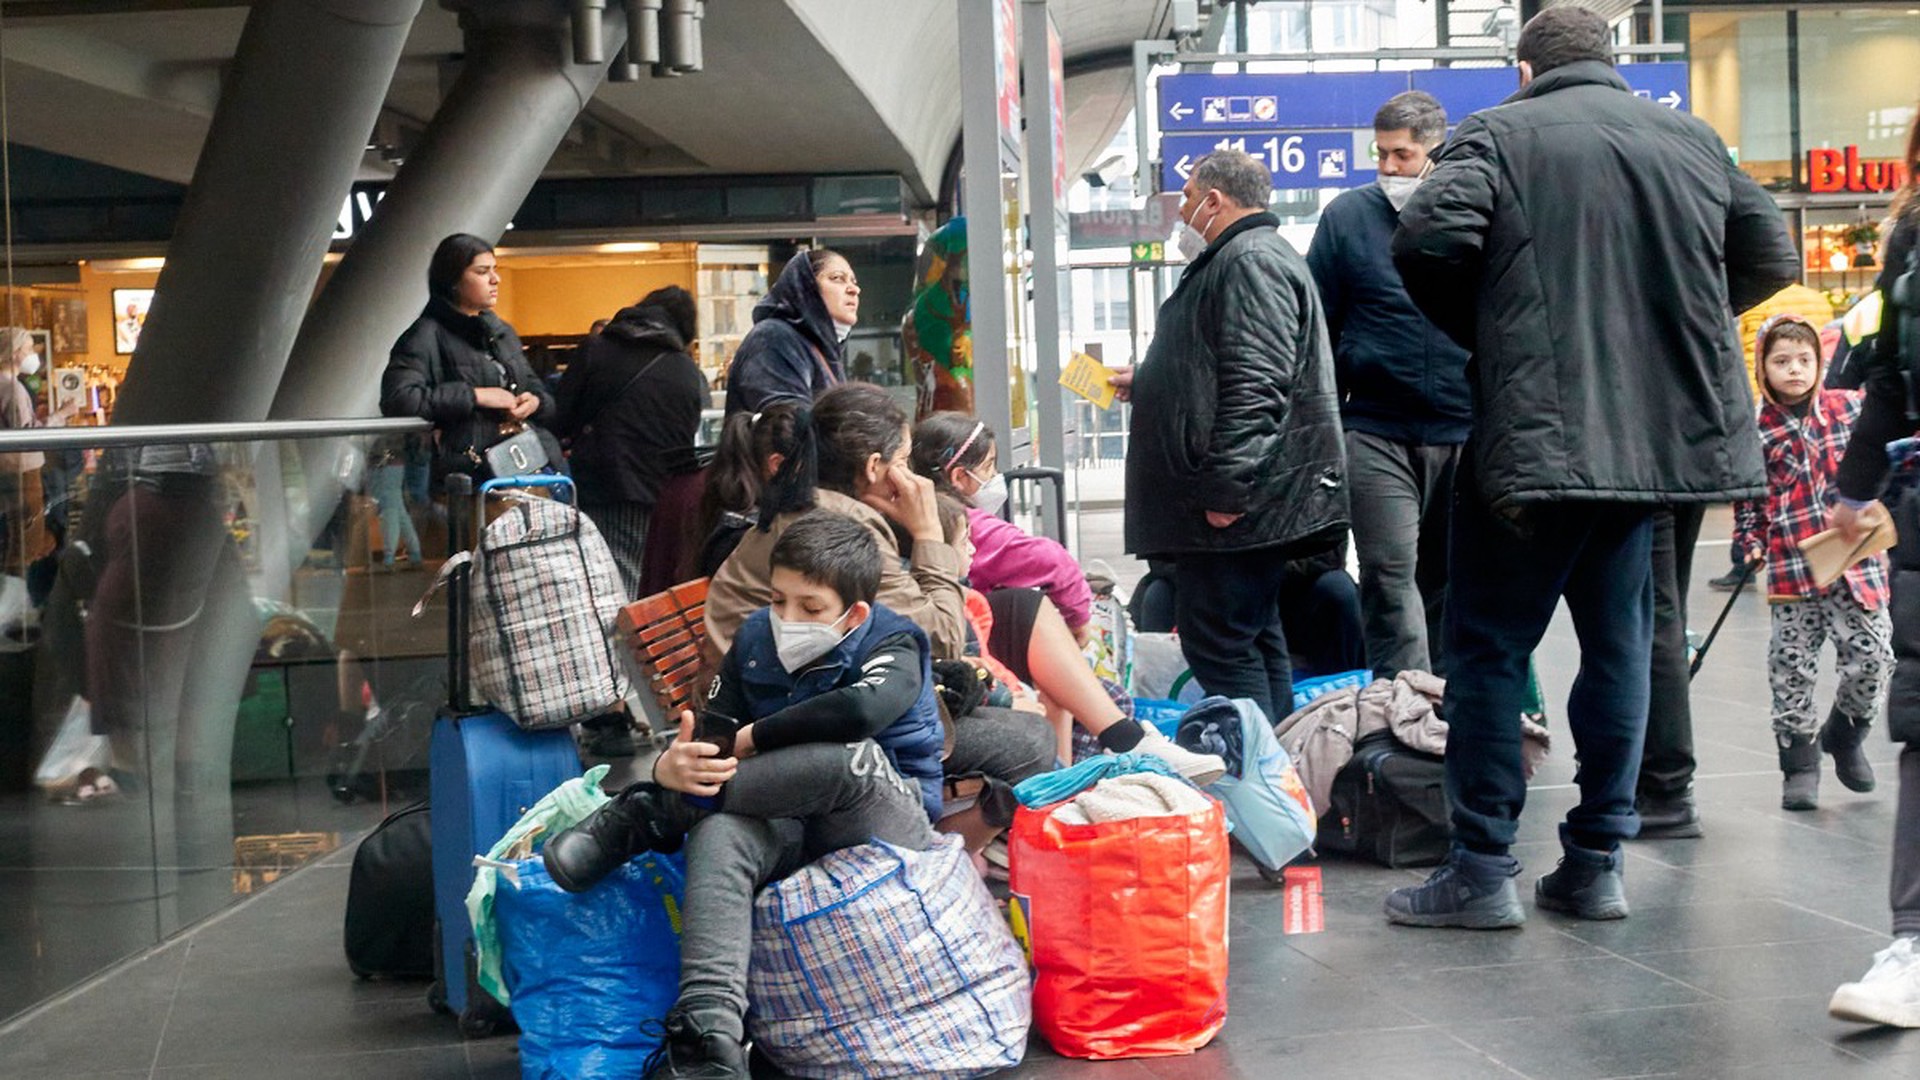 Digi24: В Германии десятки румын притворялись беженцами с Украины ради пособий